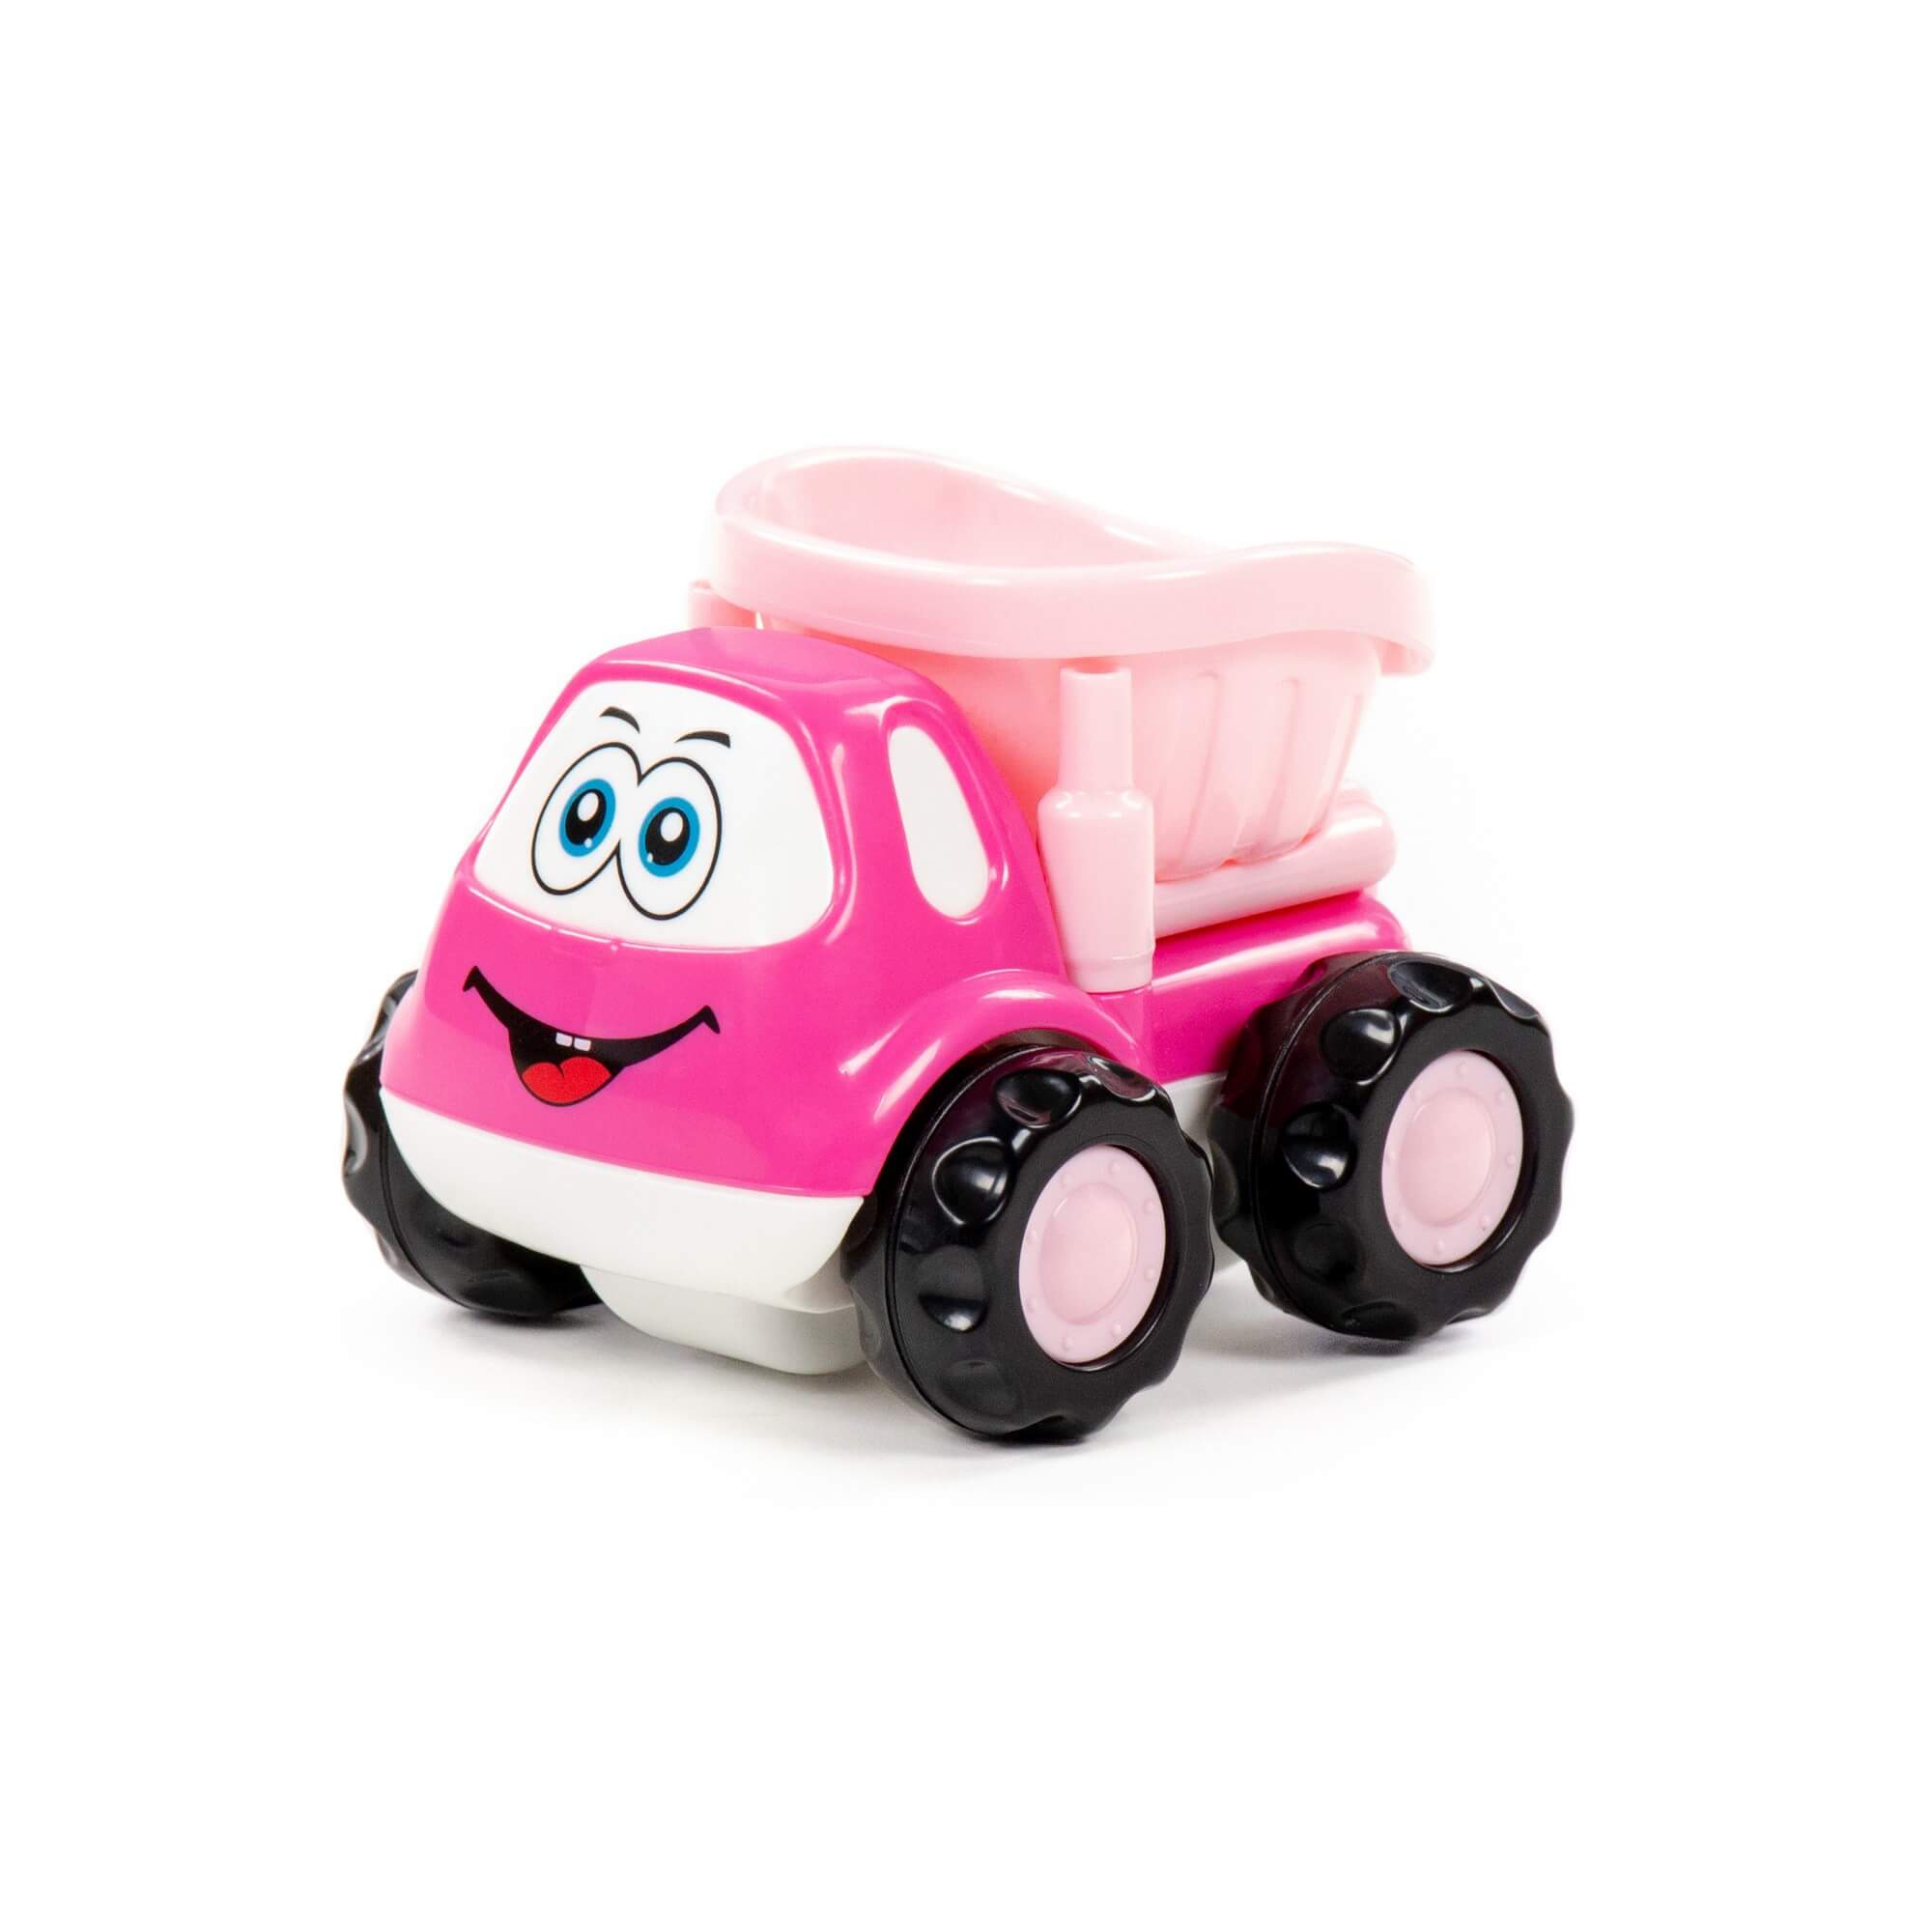 Автомобиль-самосвал Полесье Патрик, инерционный, розовый, в пакете 88789 автомобиль самосвал полесье патрик инерционный розовый в пакете 88789